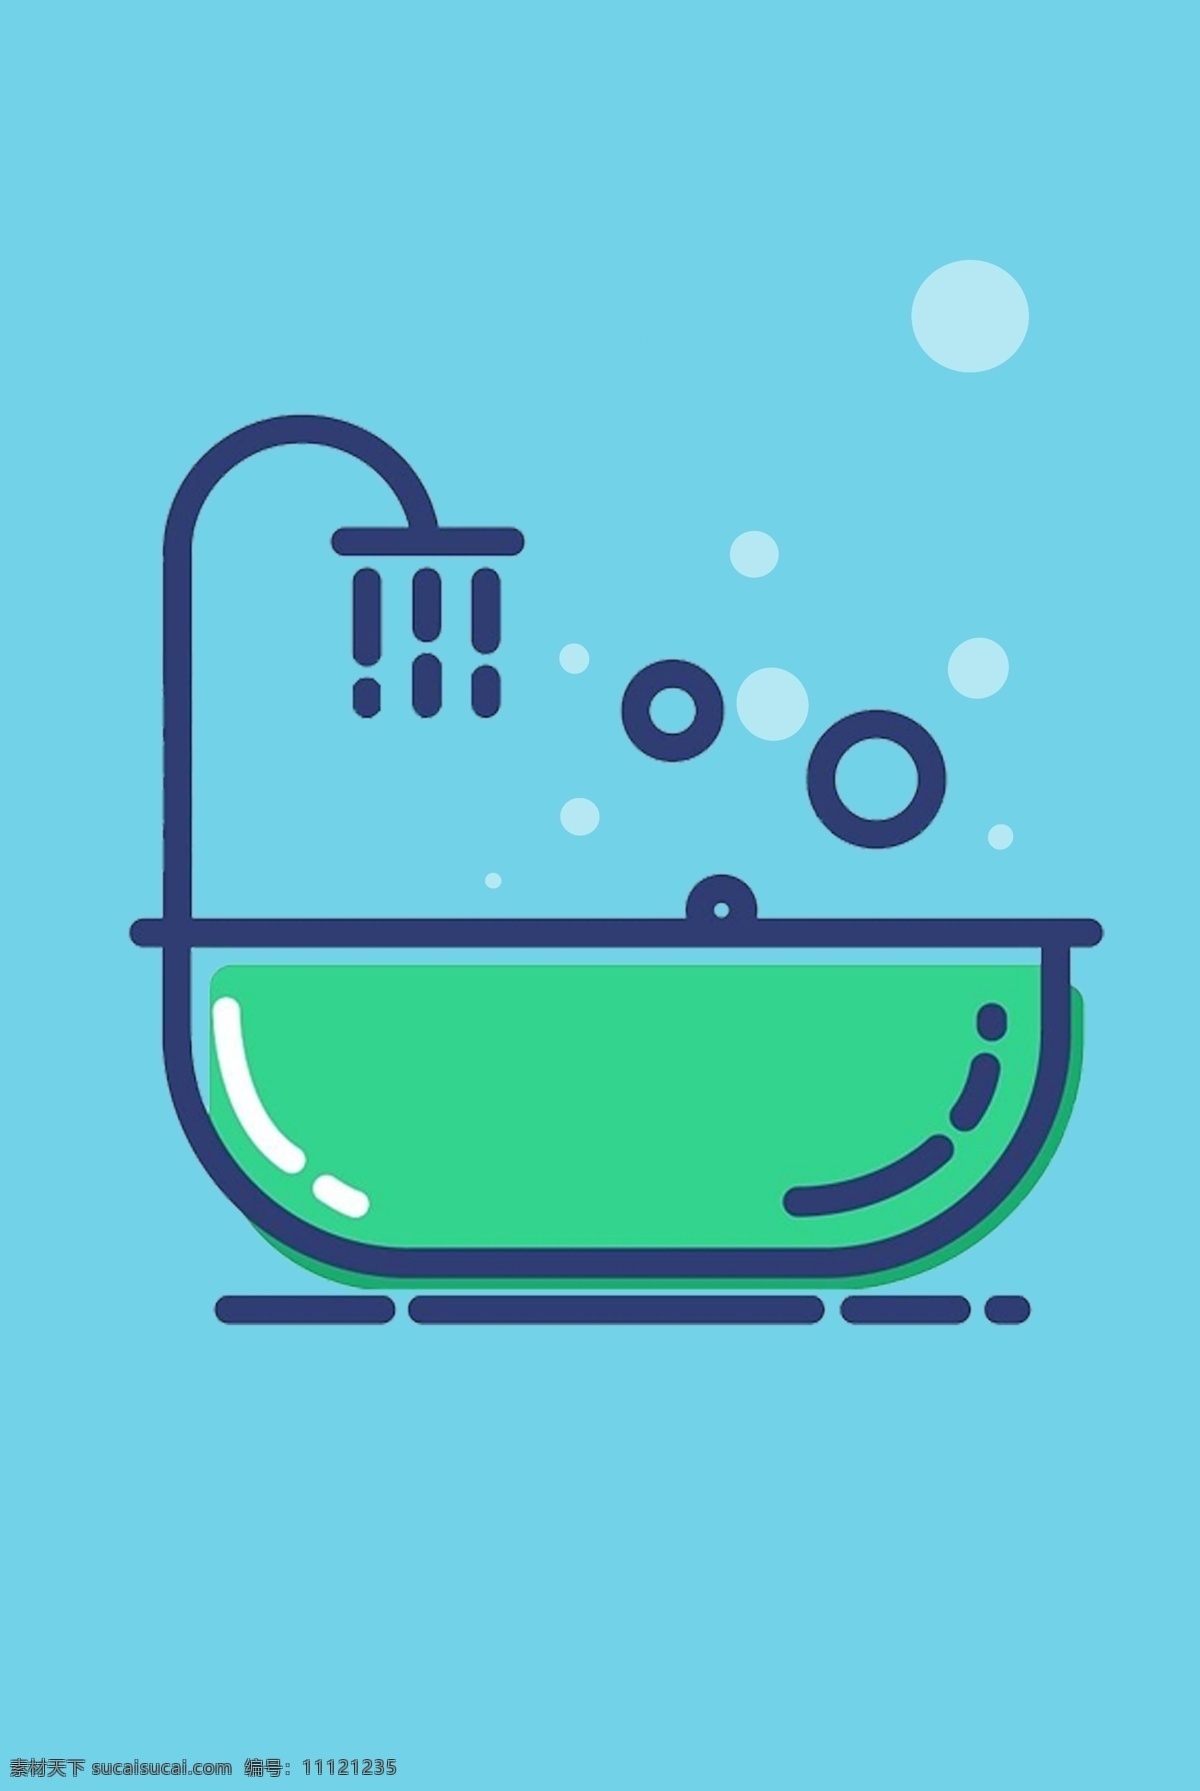 mbe 卡通 矢量图 创意 概念 矢量 小清新 图标 扁平 插画 简约 浴缸 泡泡 洗澡